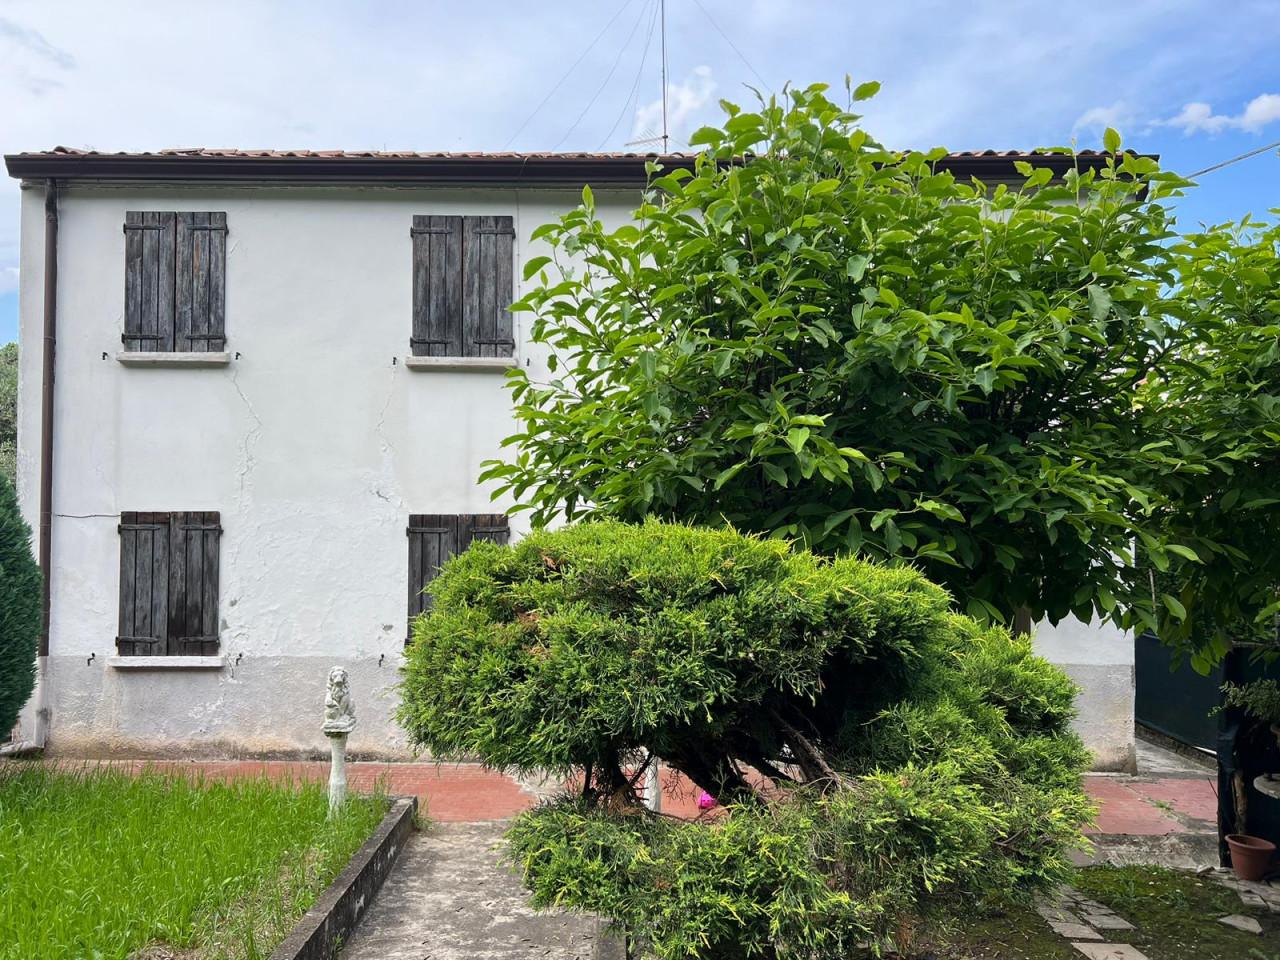 Casa indipendente in vendita a Galzignano Terme